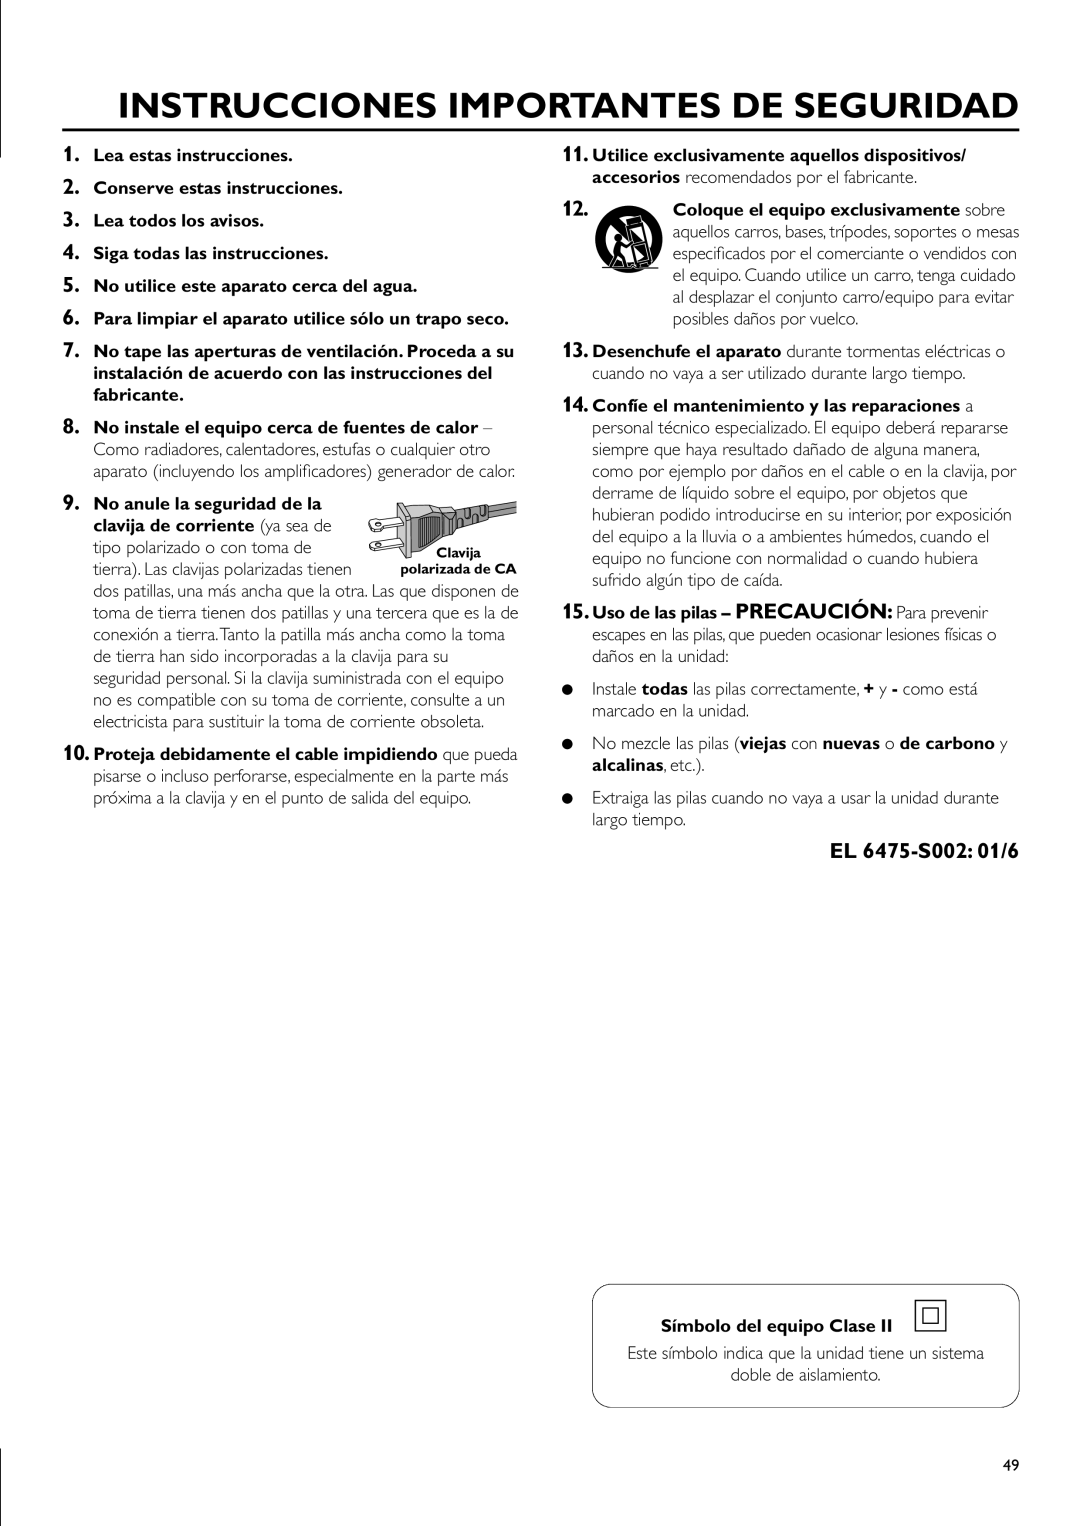 Philips CDR-795 manual Instrucciones Importantes De Seguridad, EL 6475-S002 01/6, No utilice este aparato cerca del agua 